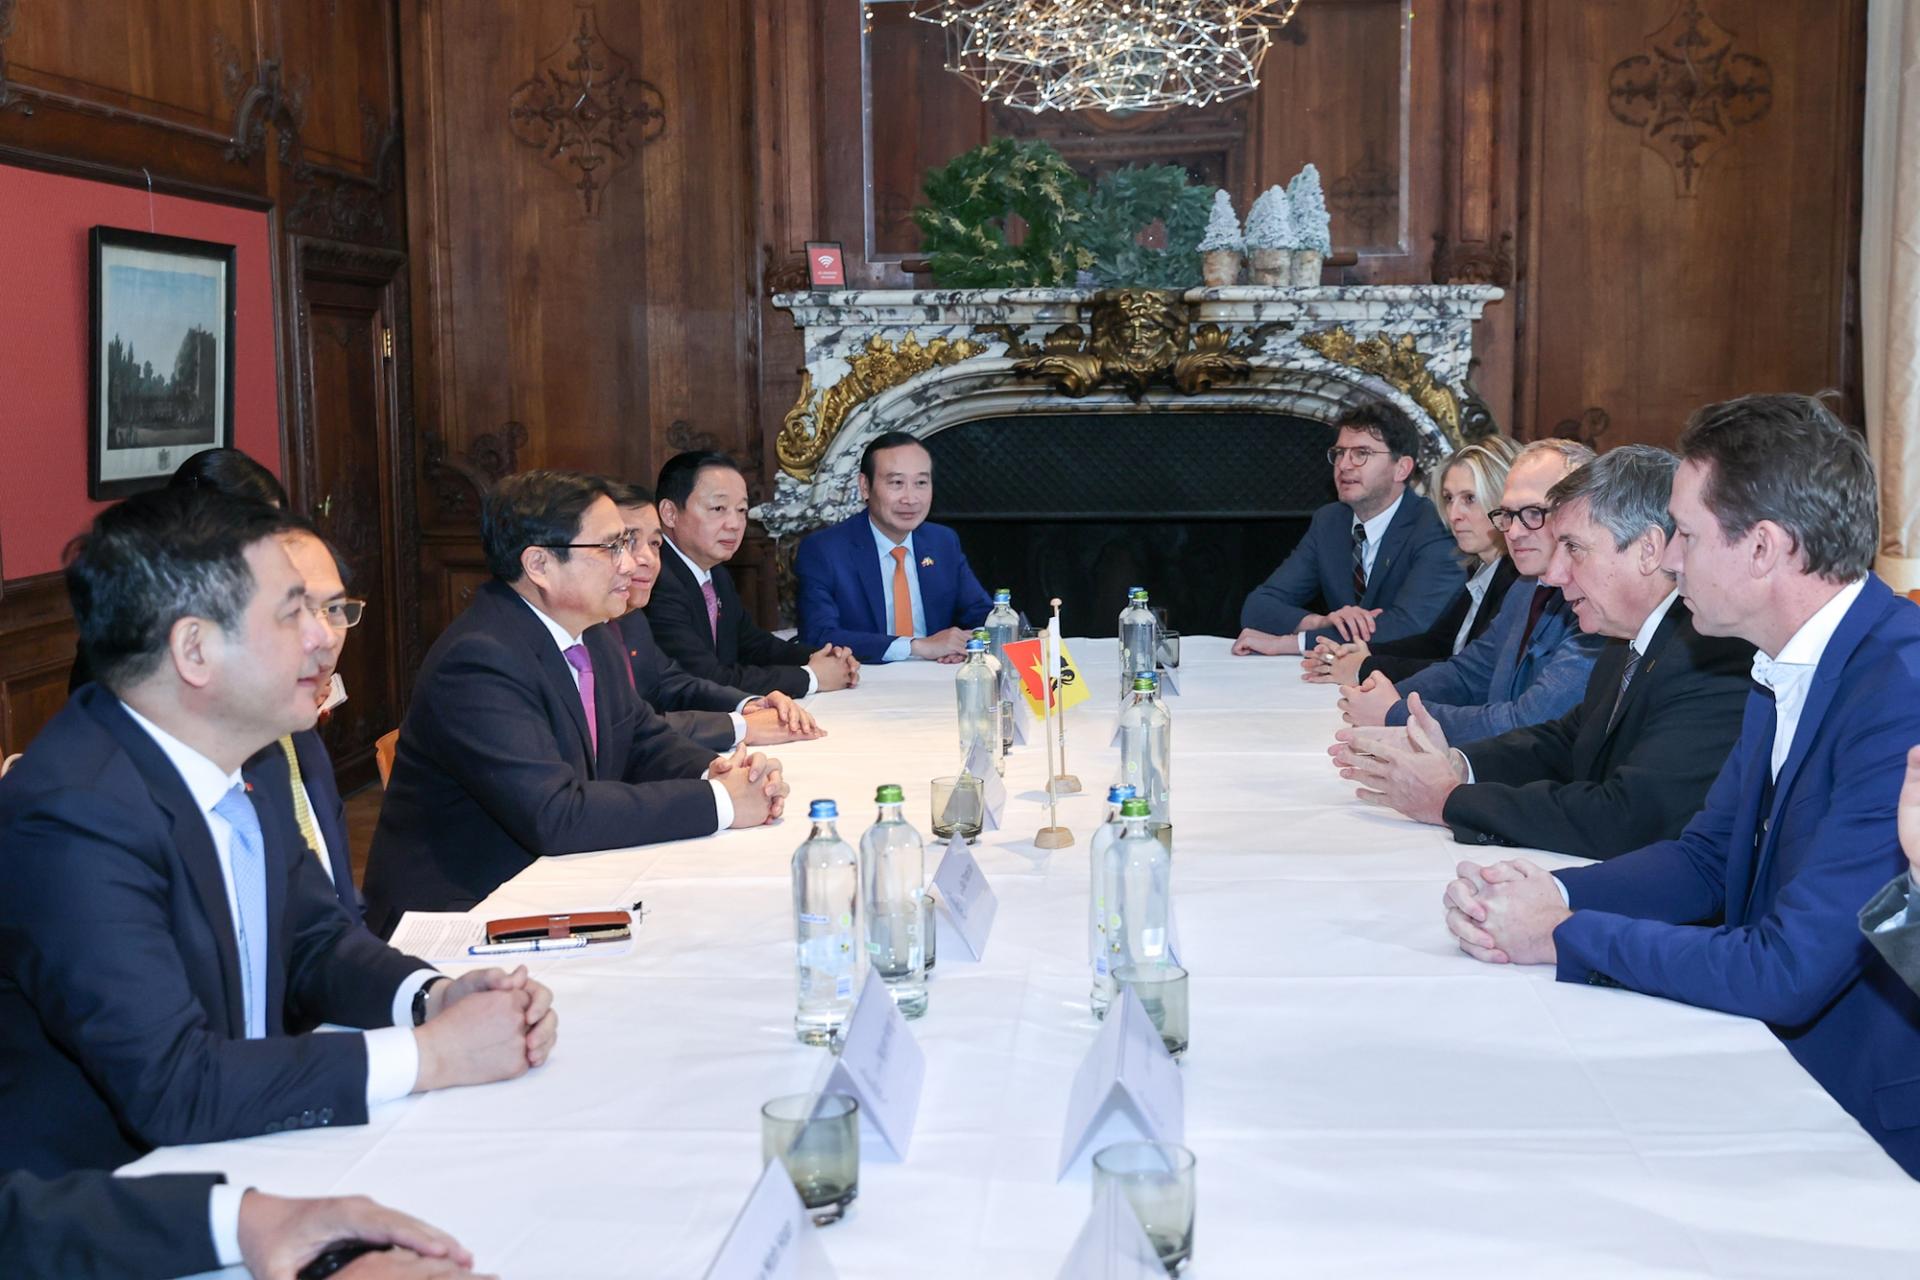 Thủ tướng Phạm Minh Chính làm việc với ông Jan Jambon, Bộ trưởng, Thủ hiến vùng Flanders, Bộ trưởng Ngoại giao, Xã hội, Số hóa và Quản lý hạ tầng, lãnh đạo hơn 30 doanh nghiệp, tập đoàn lớn của vùng Flanders và Bỉ.